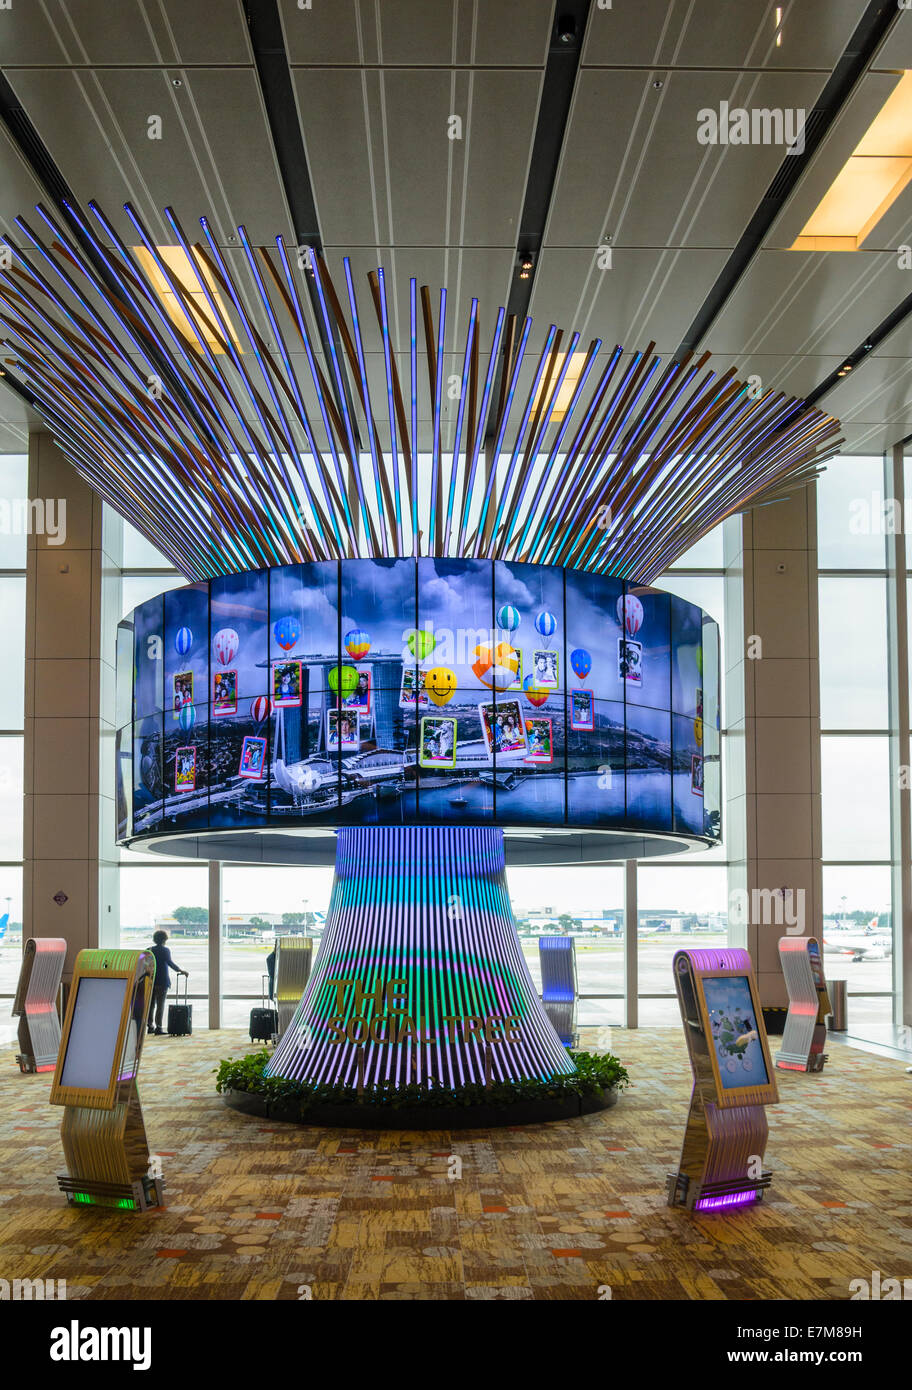 El árbol Social en el Aeropuerto de Changi, una pantalla de medios interactivos, Singapur Foto de stock